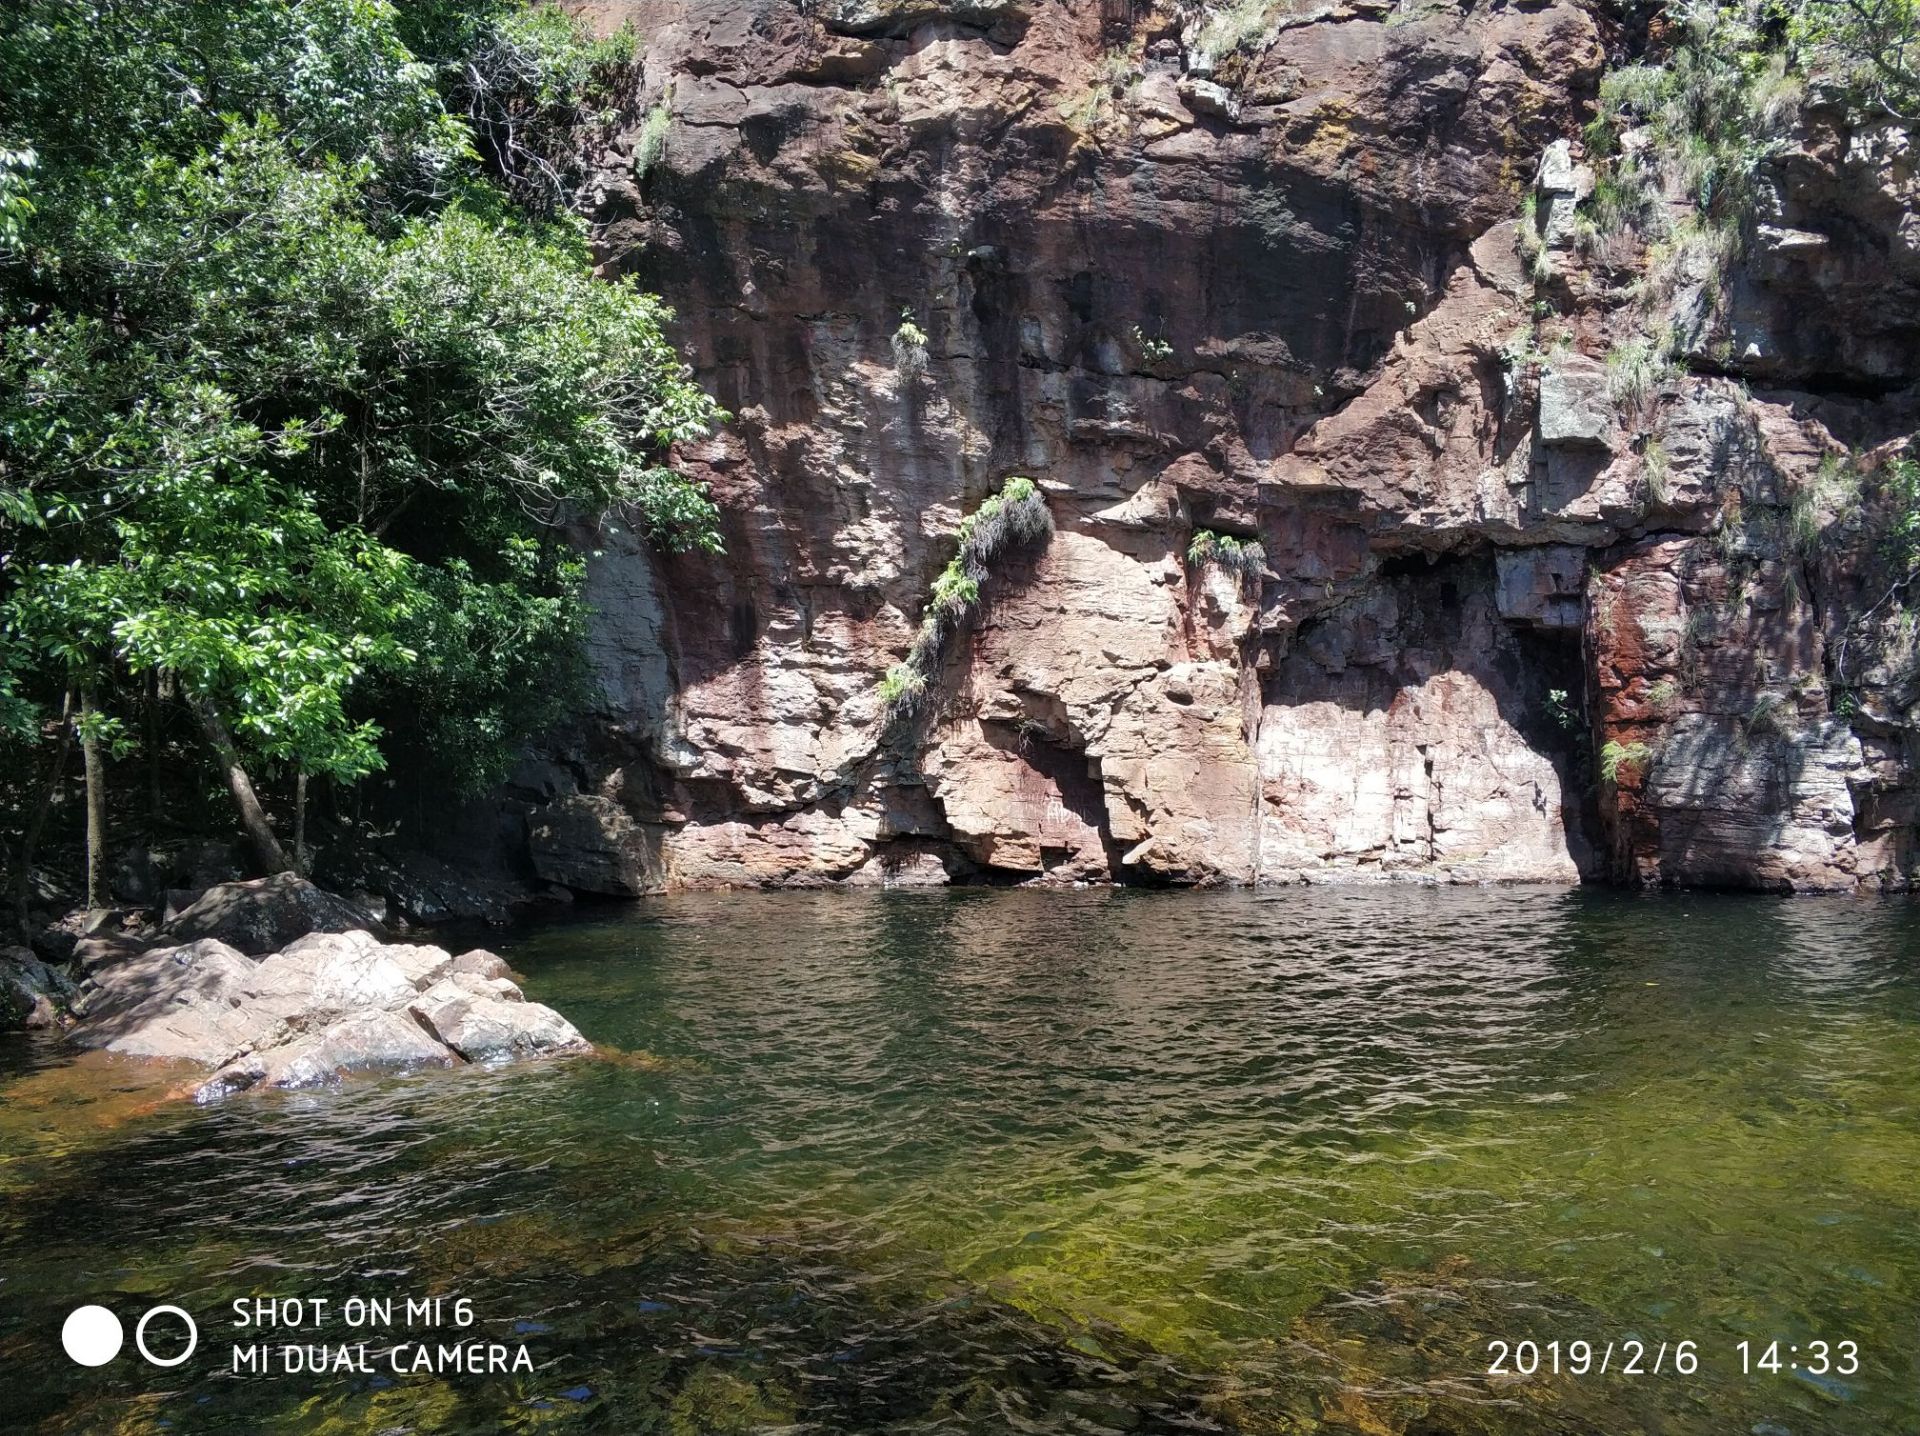 达尔文李治菲特国家公园，河水清澈，瀑布壮观，在炎热的夏天泡在水里简直太爽